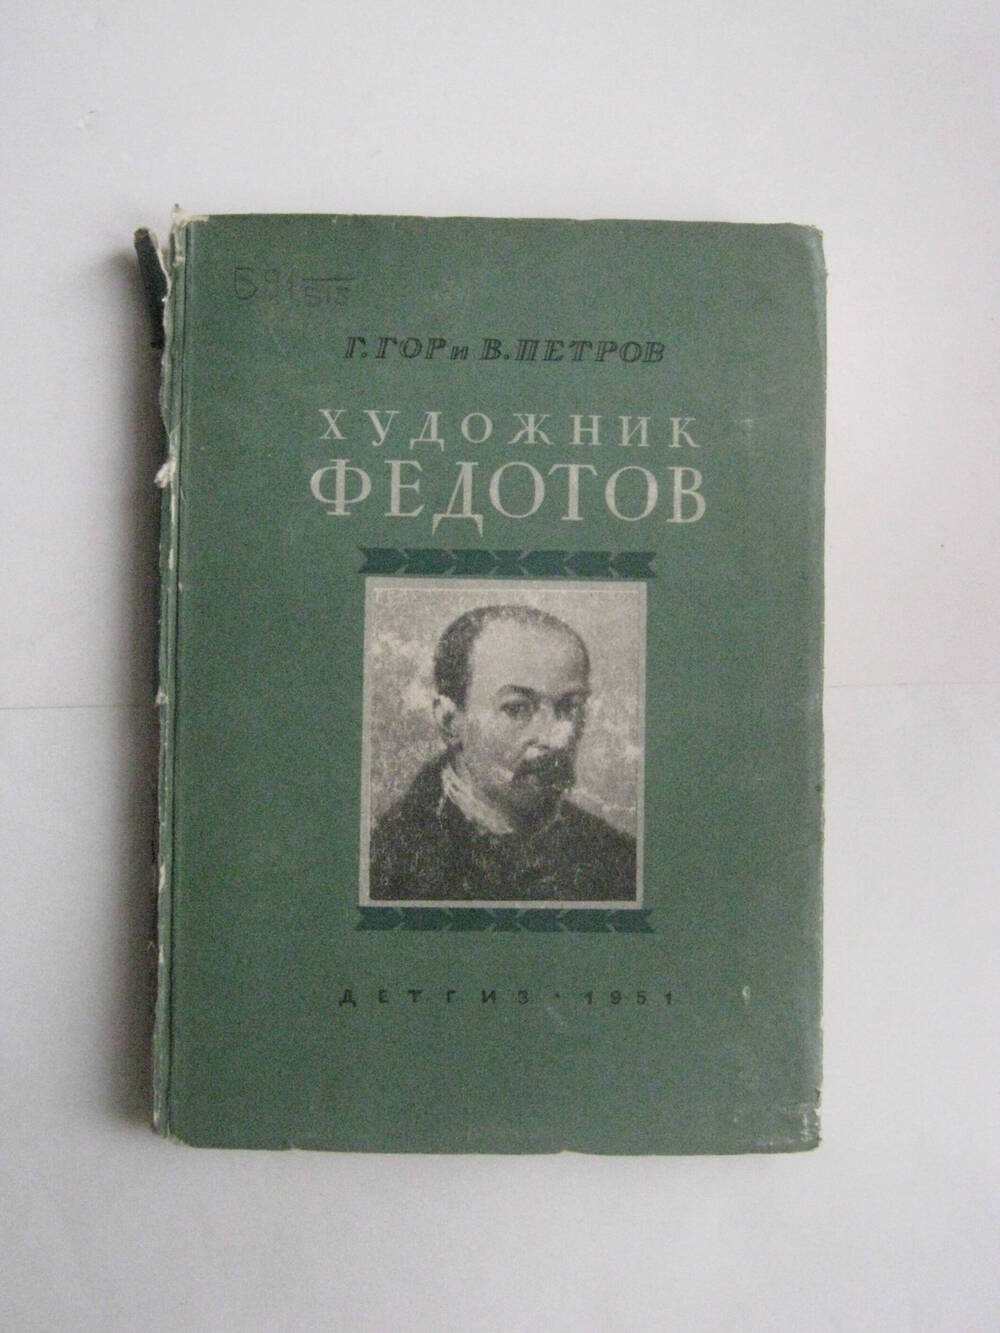 Книга. Гор Г. и Петров В. Художник Федотов. - М.,1951.